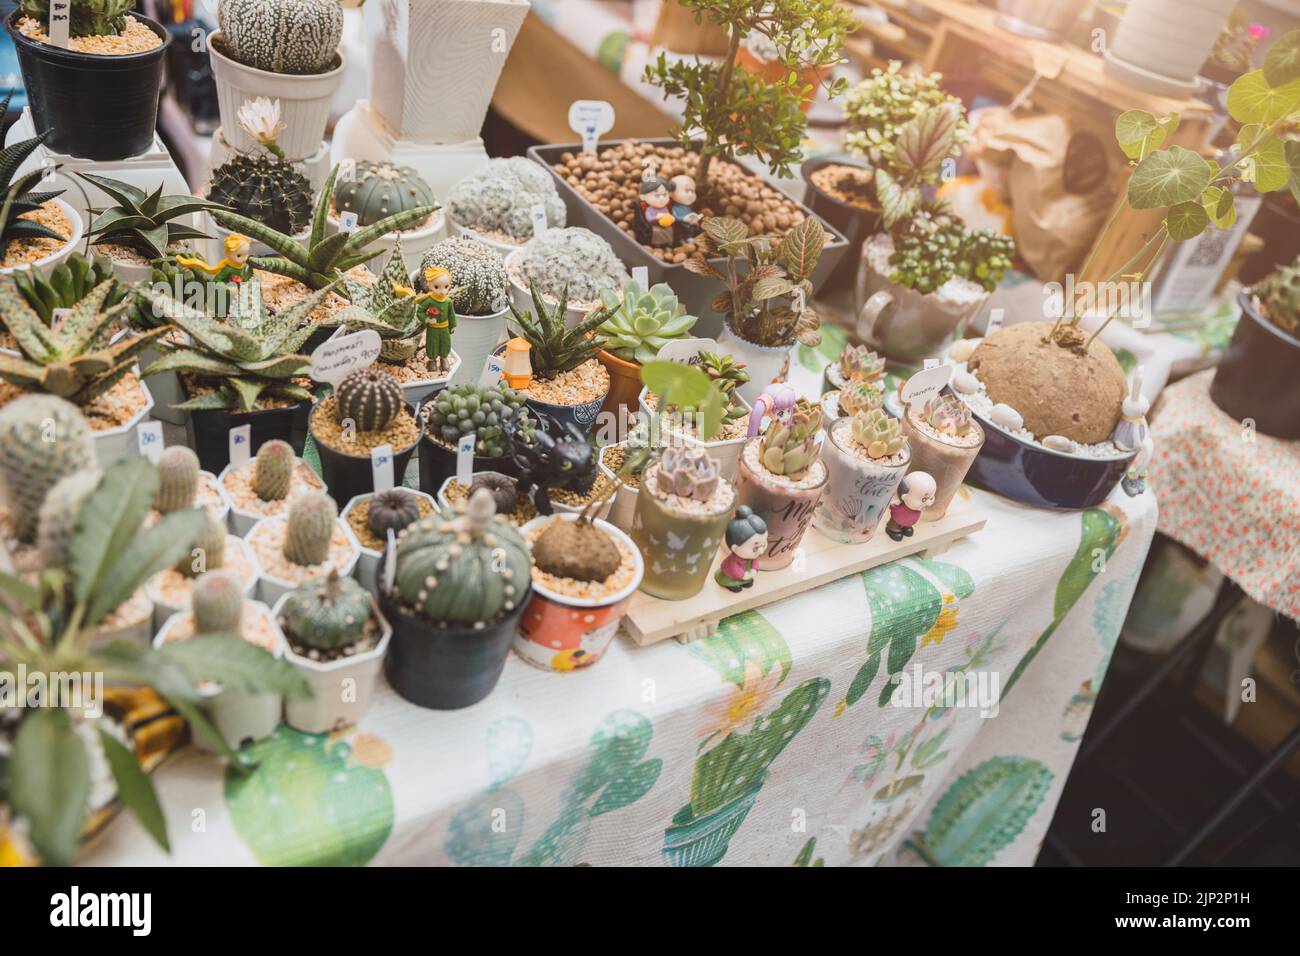 Buying cactus -Fotos und -Bildmaterial in hoher Auflösung – Alamy